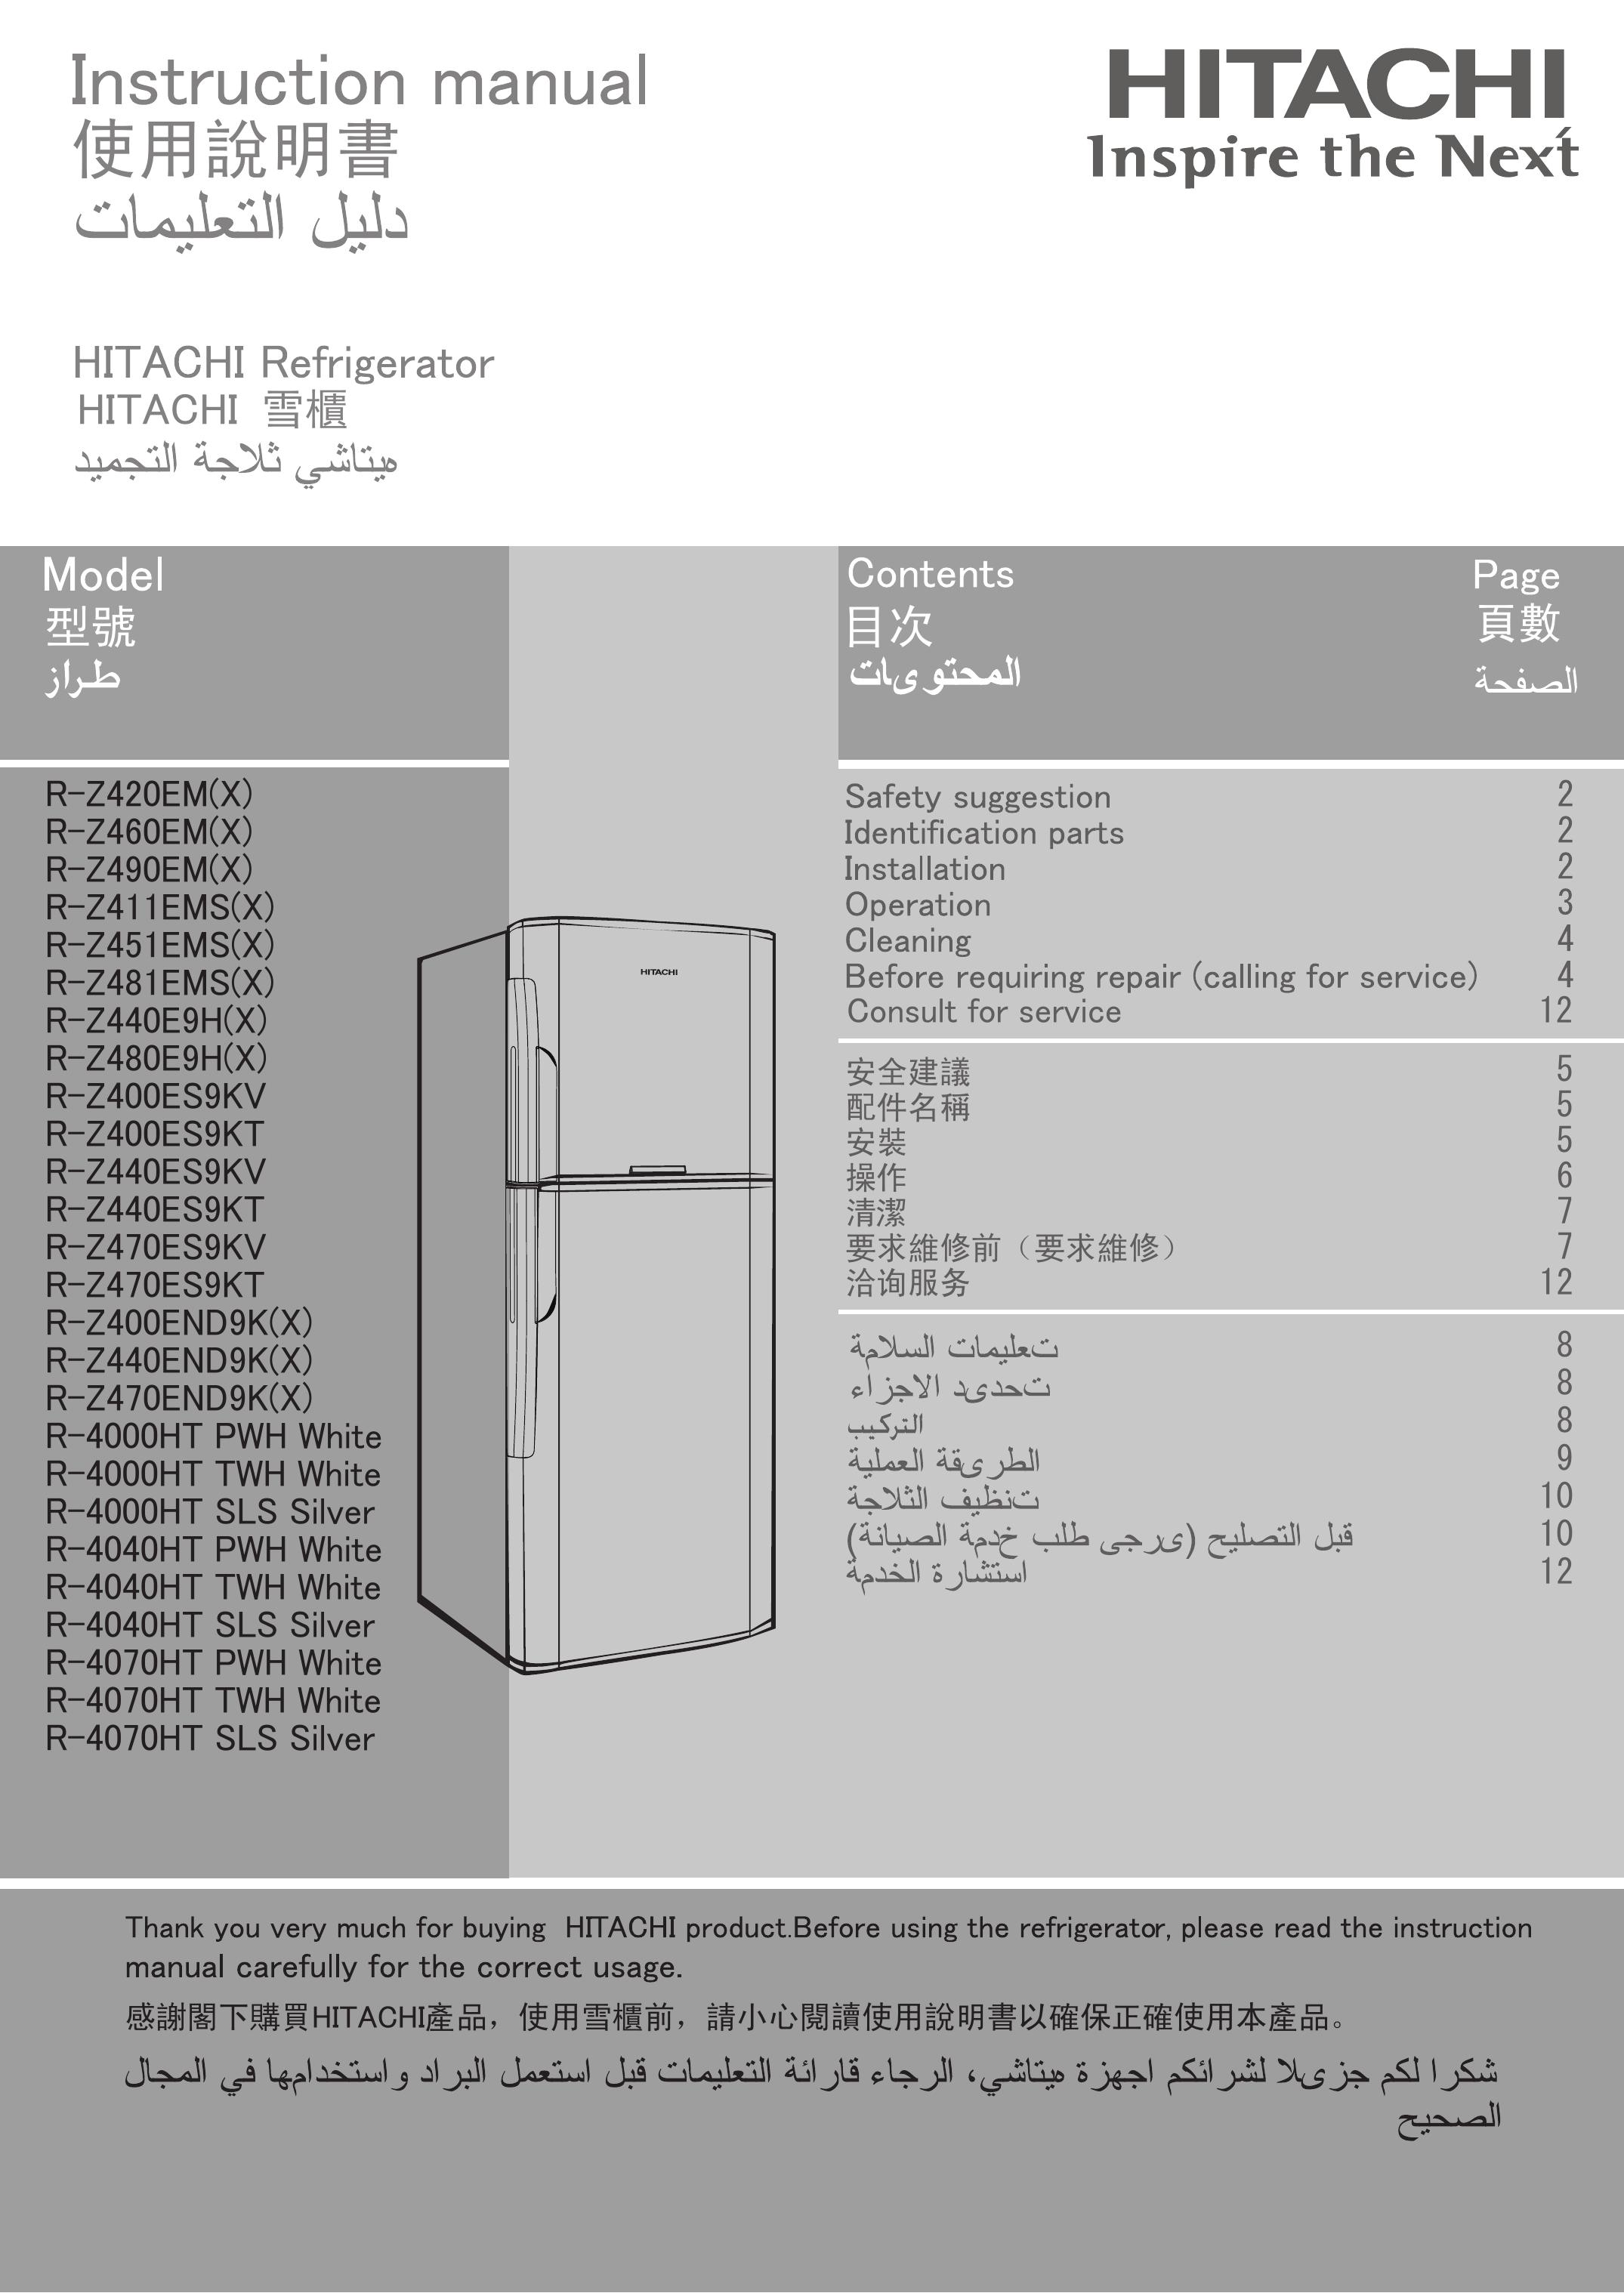 Hitachi R-Z460EM(X) Refrigerator User Manual